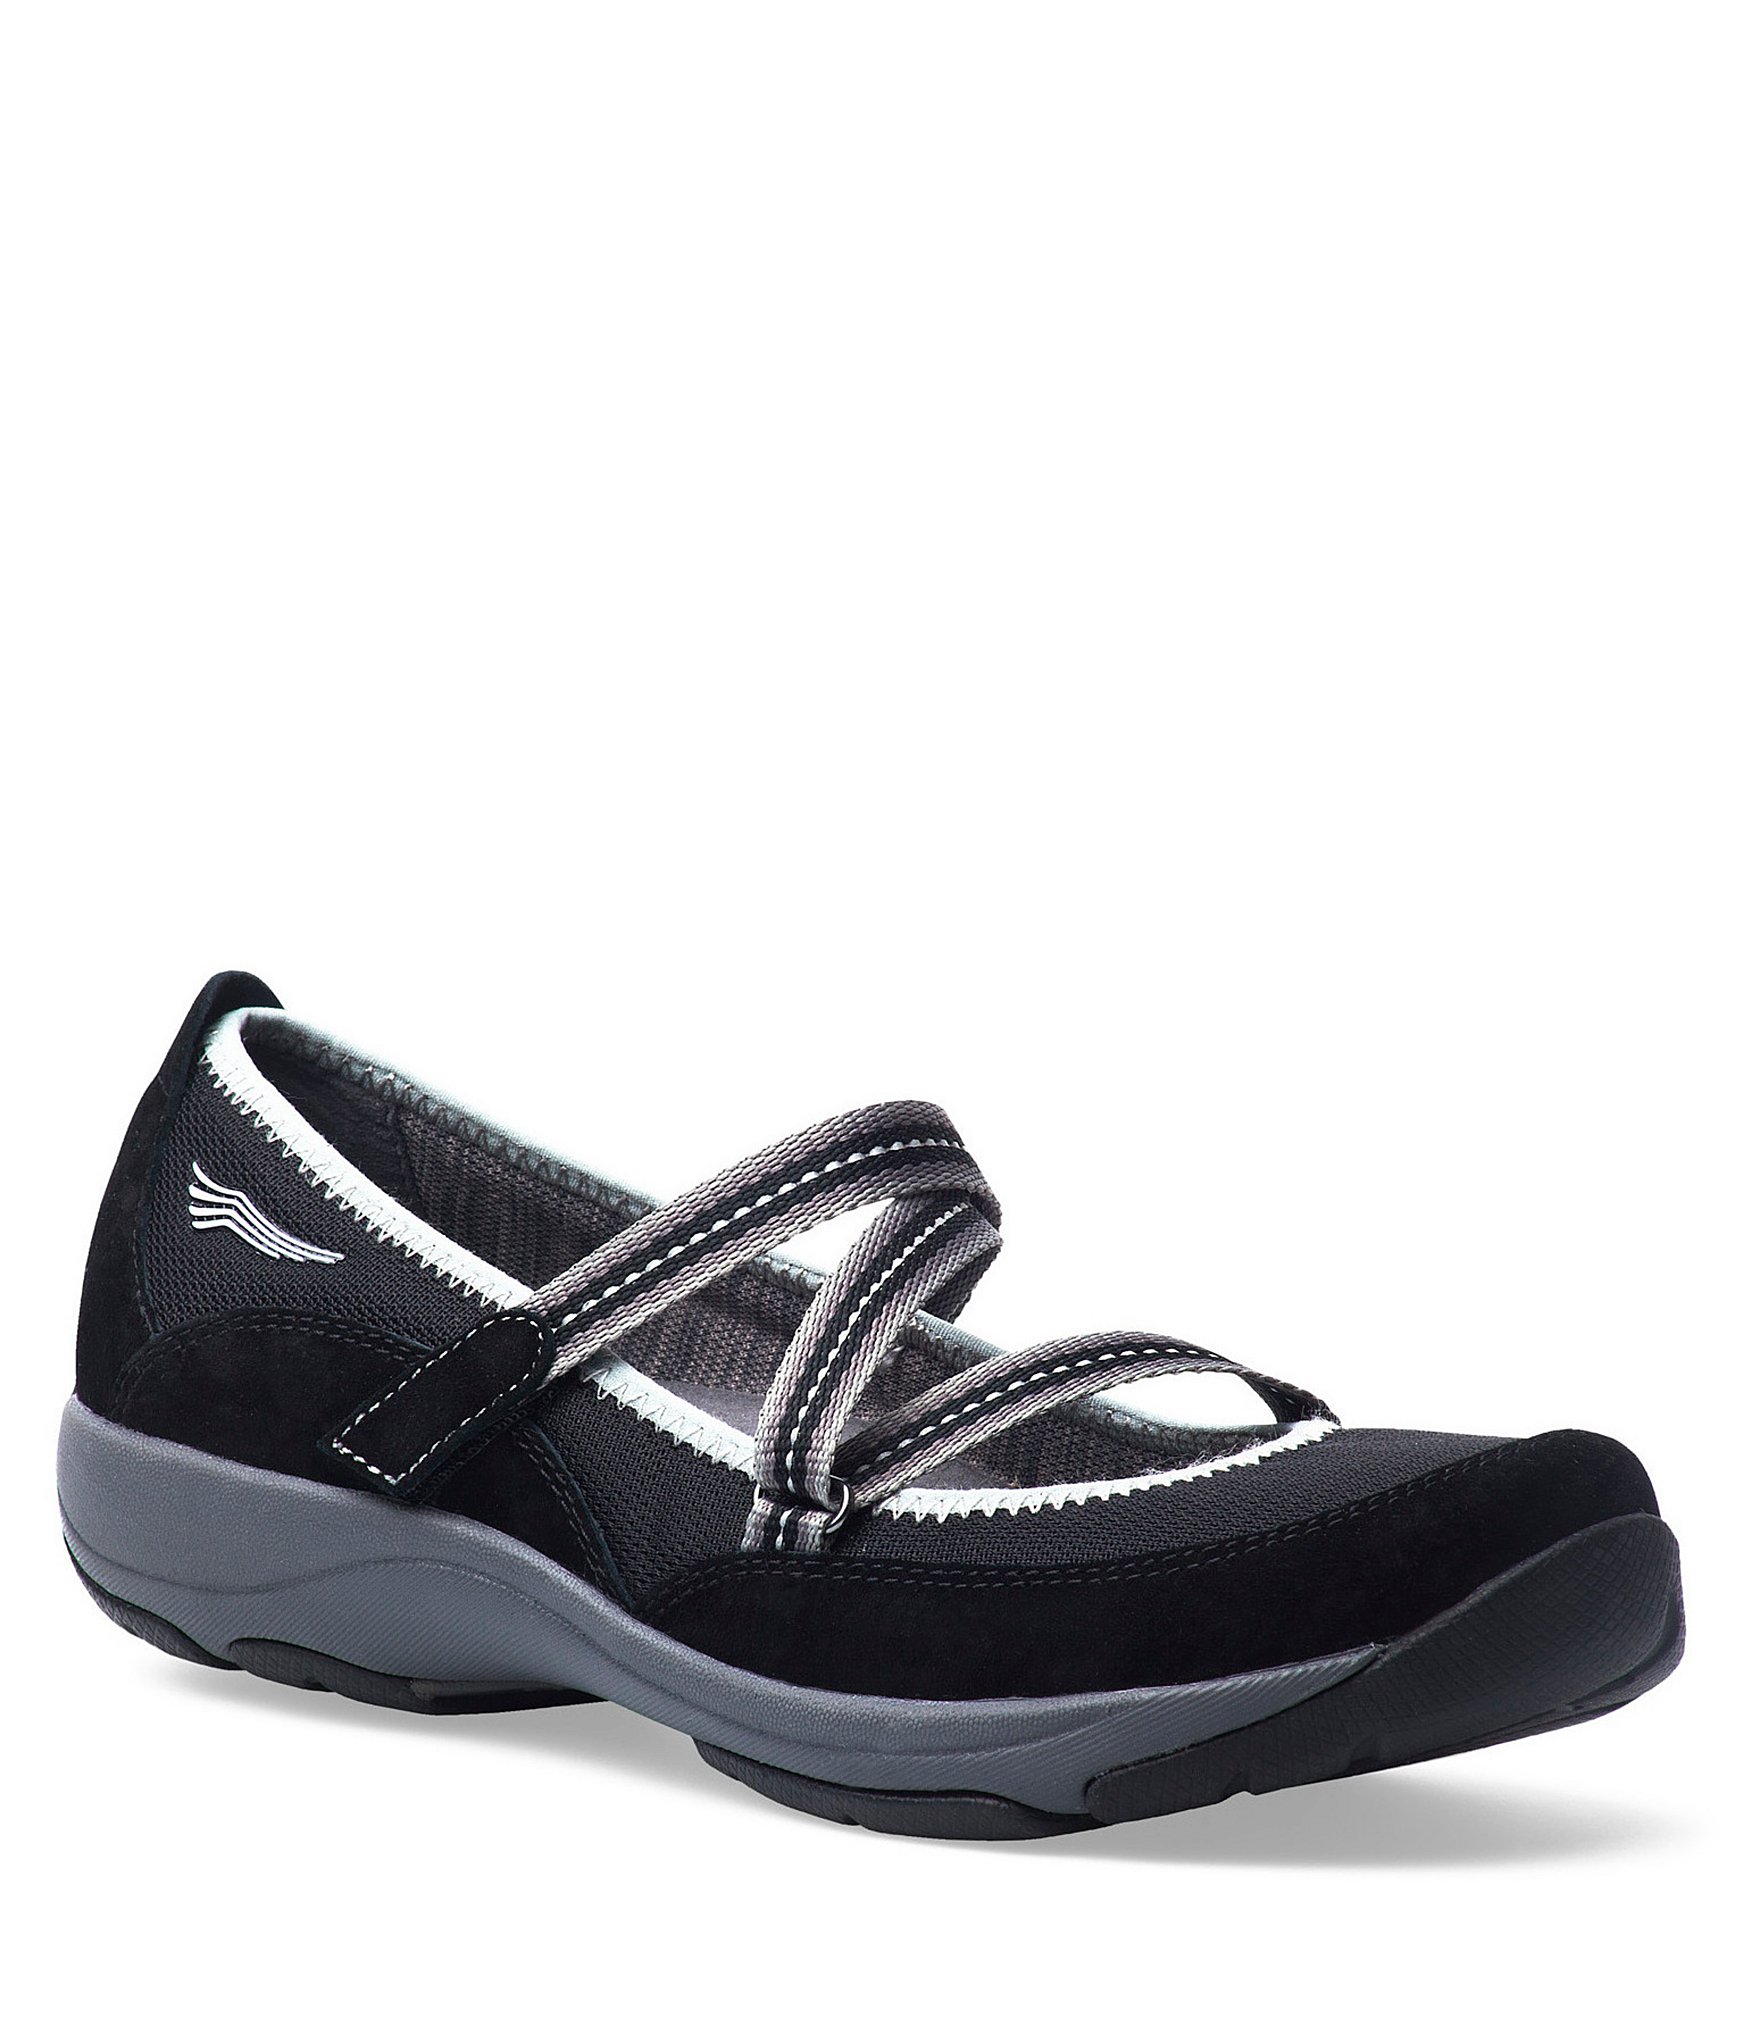 Dansko Hazel Suede Mary Jane Shoes | Dillards